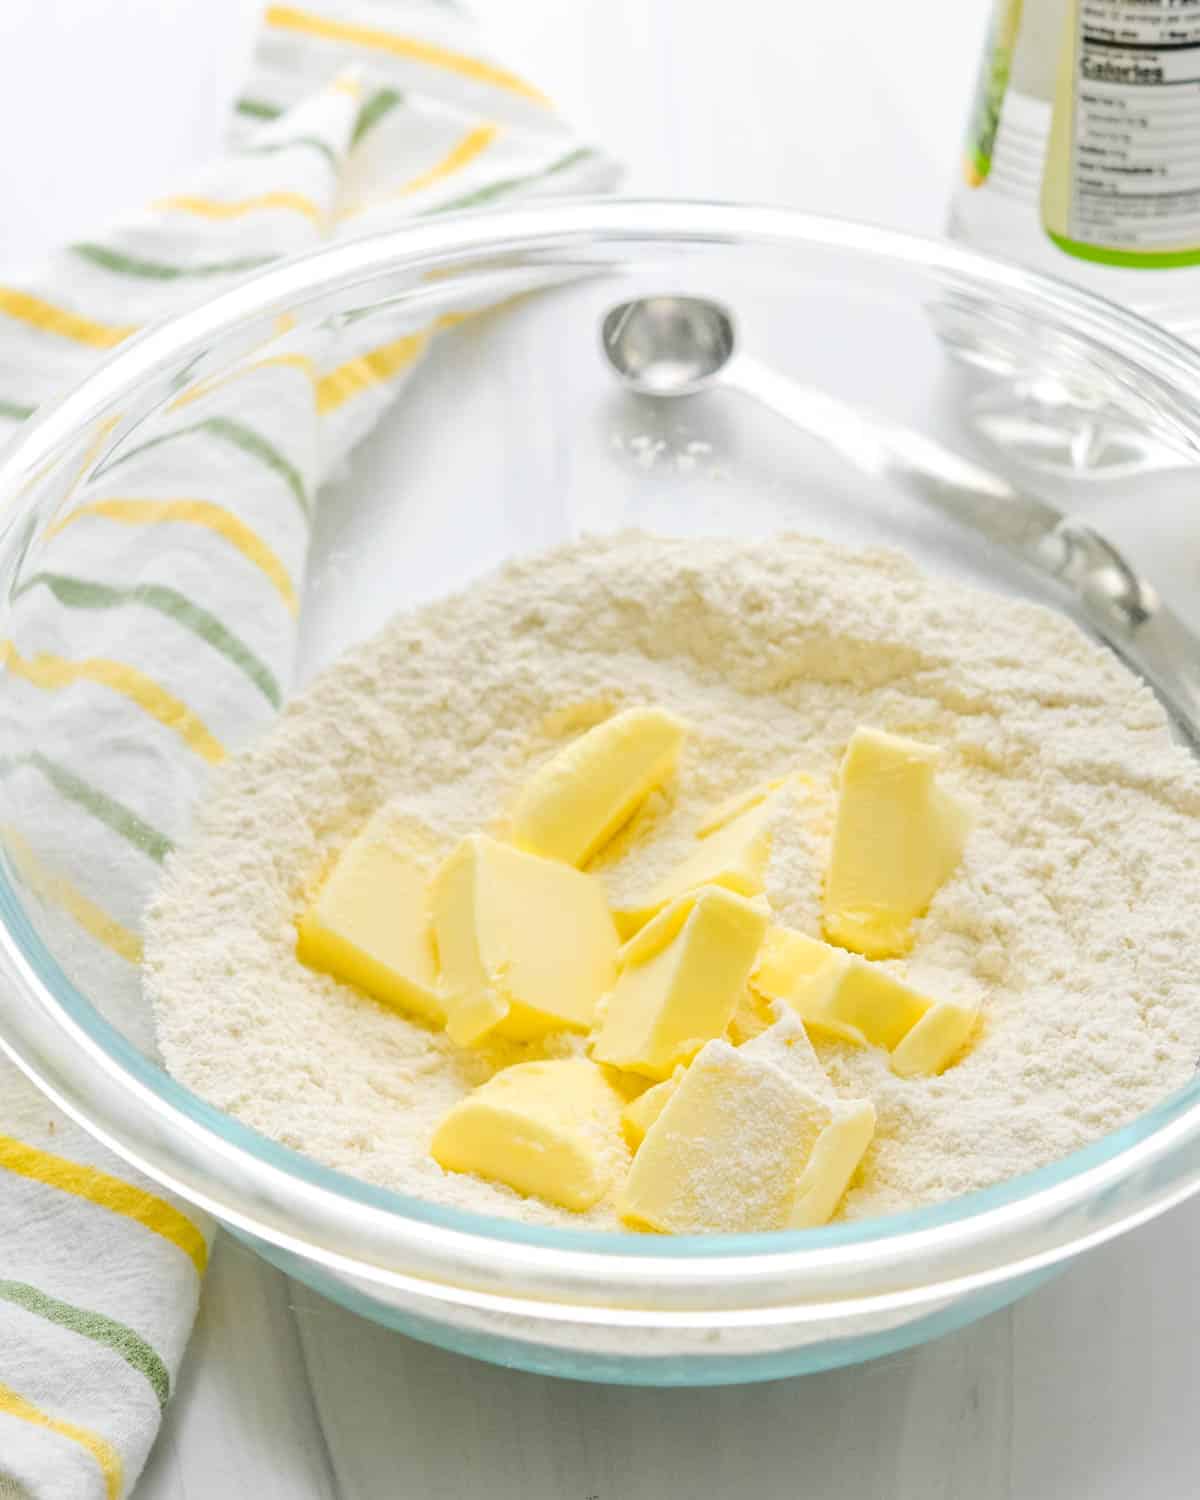 Adding butter to flour mixture.